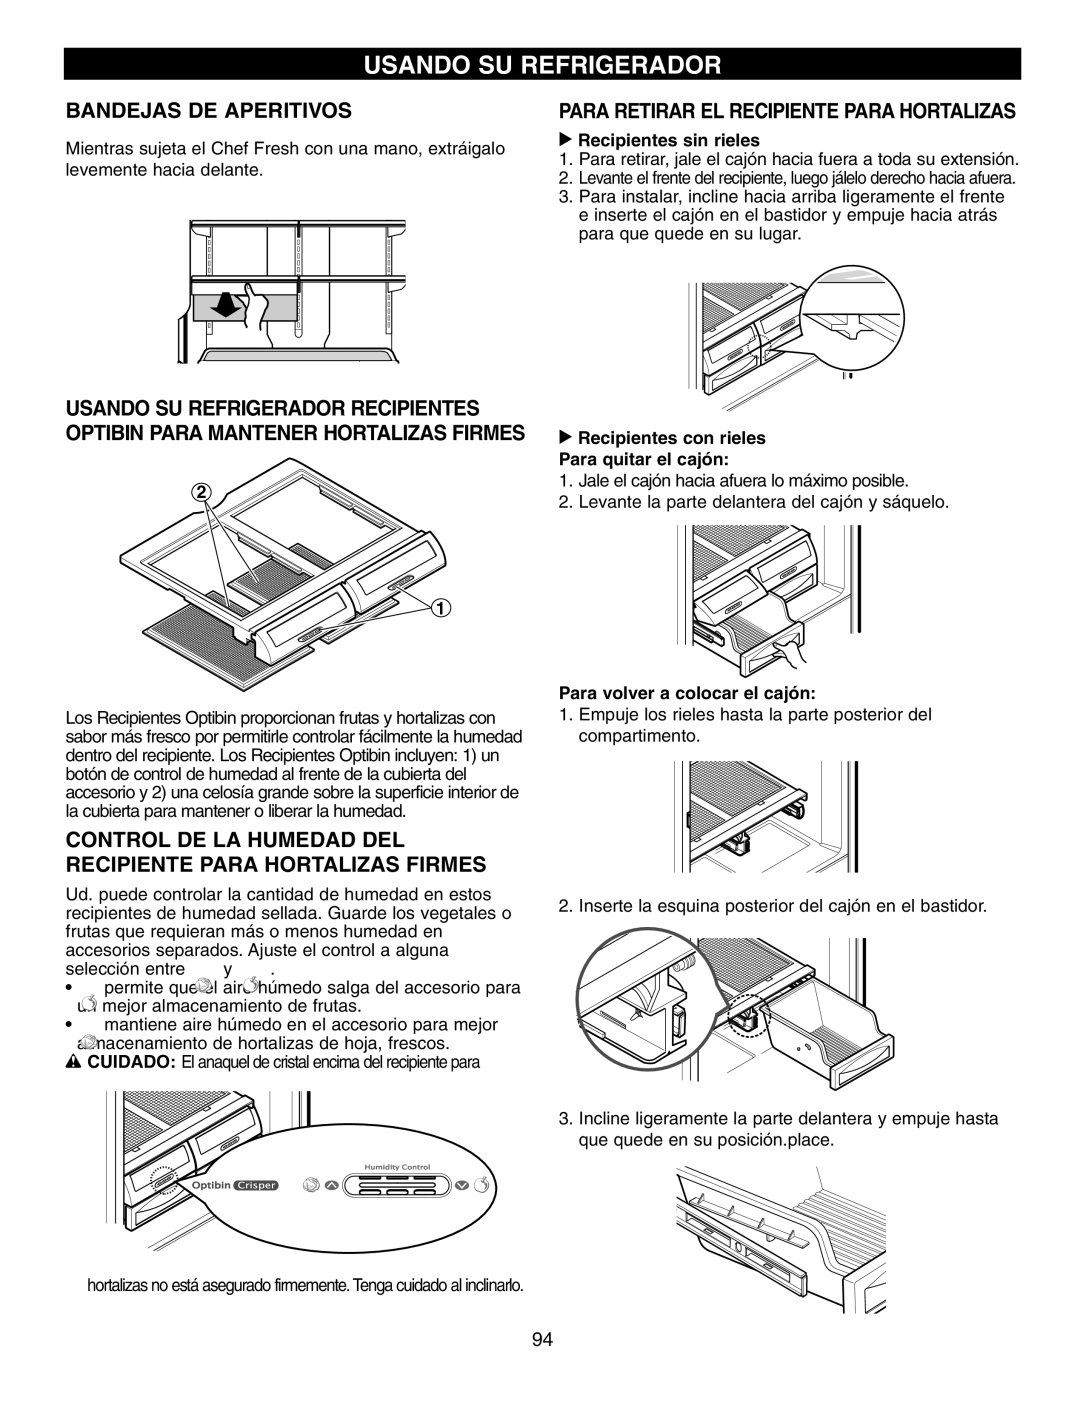 LG Electronics LFX25970 manual Usando Su Refrigerador, Bandejas De Aperitivos, Para Retirar El Recipiente Para Hortalizas 